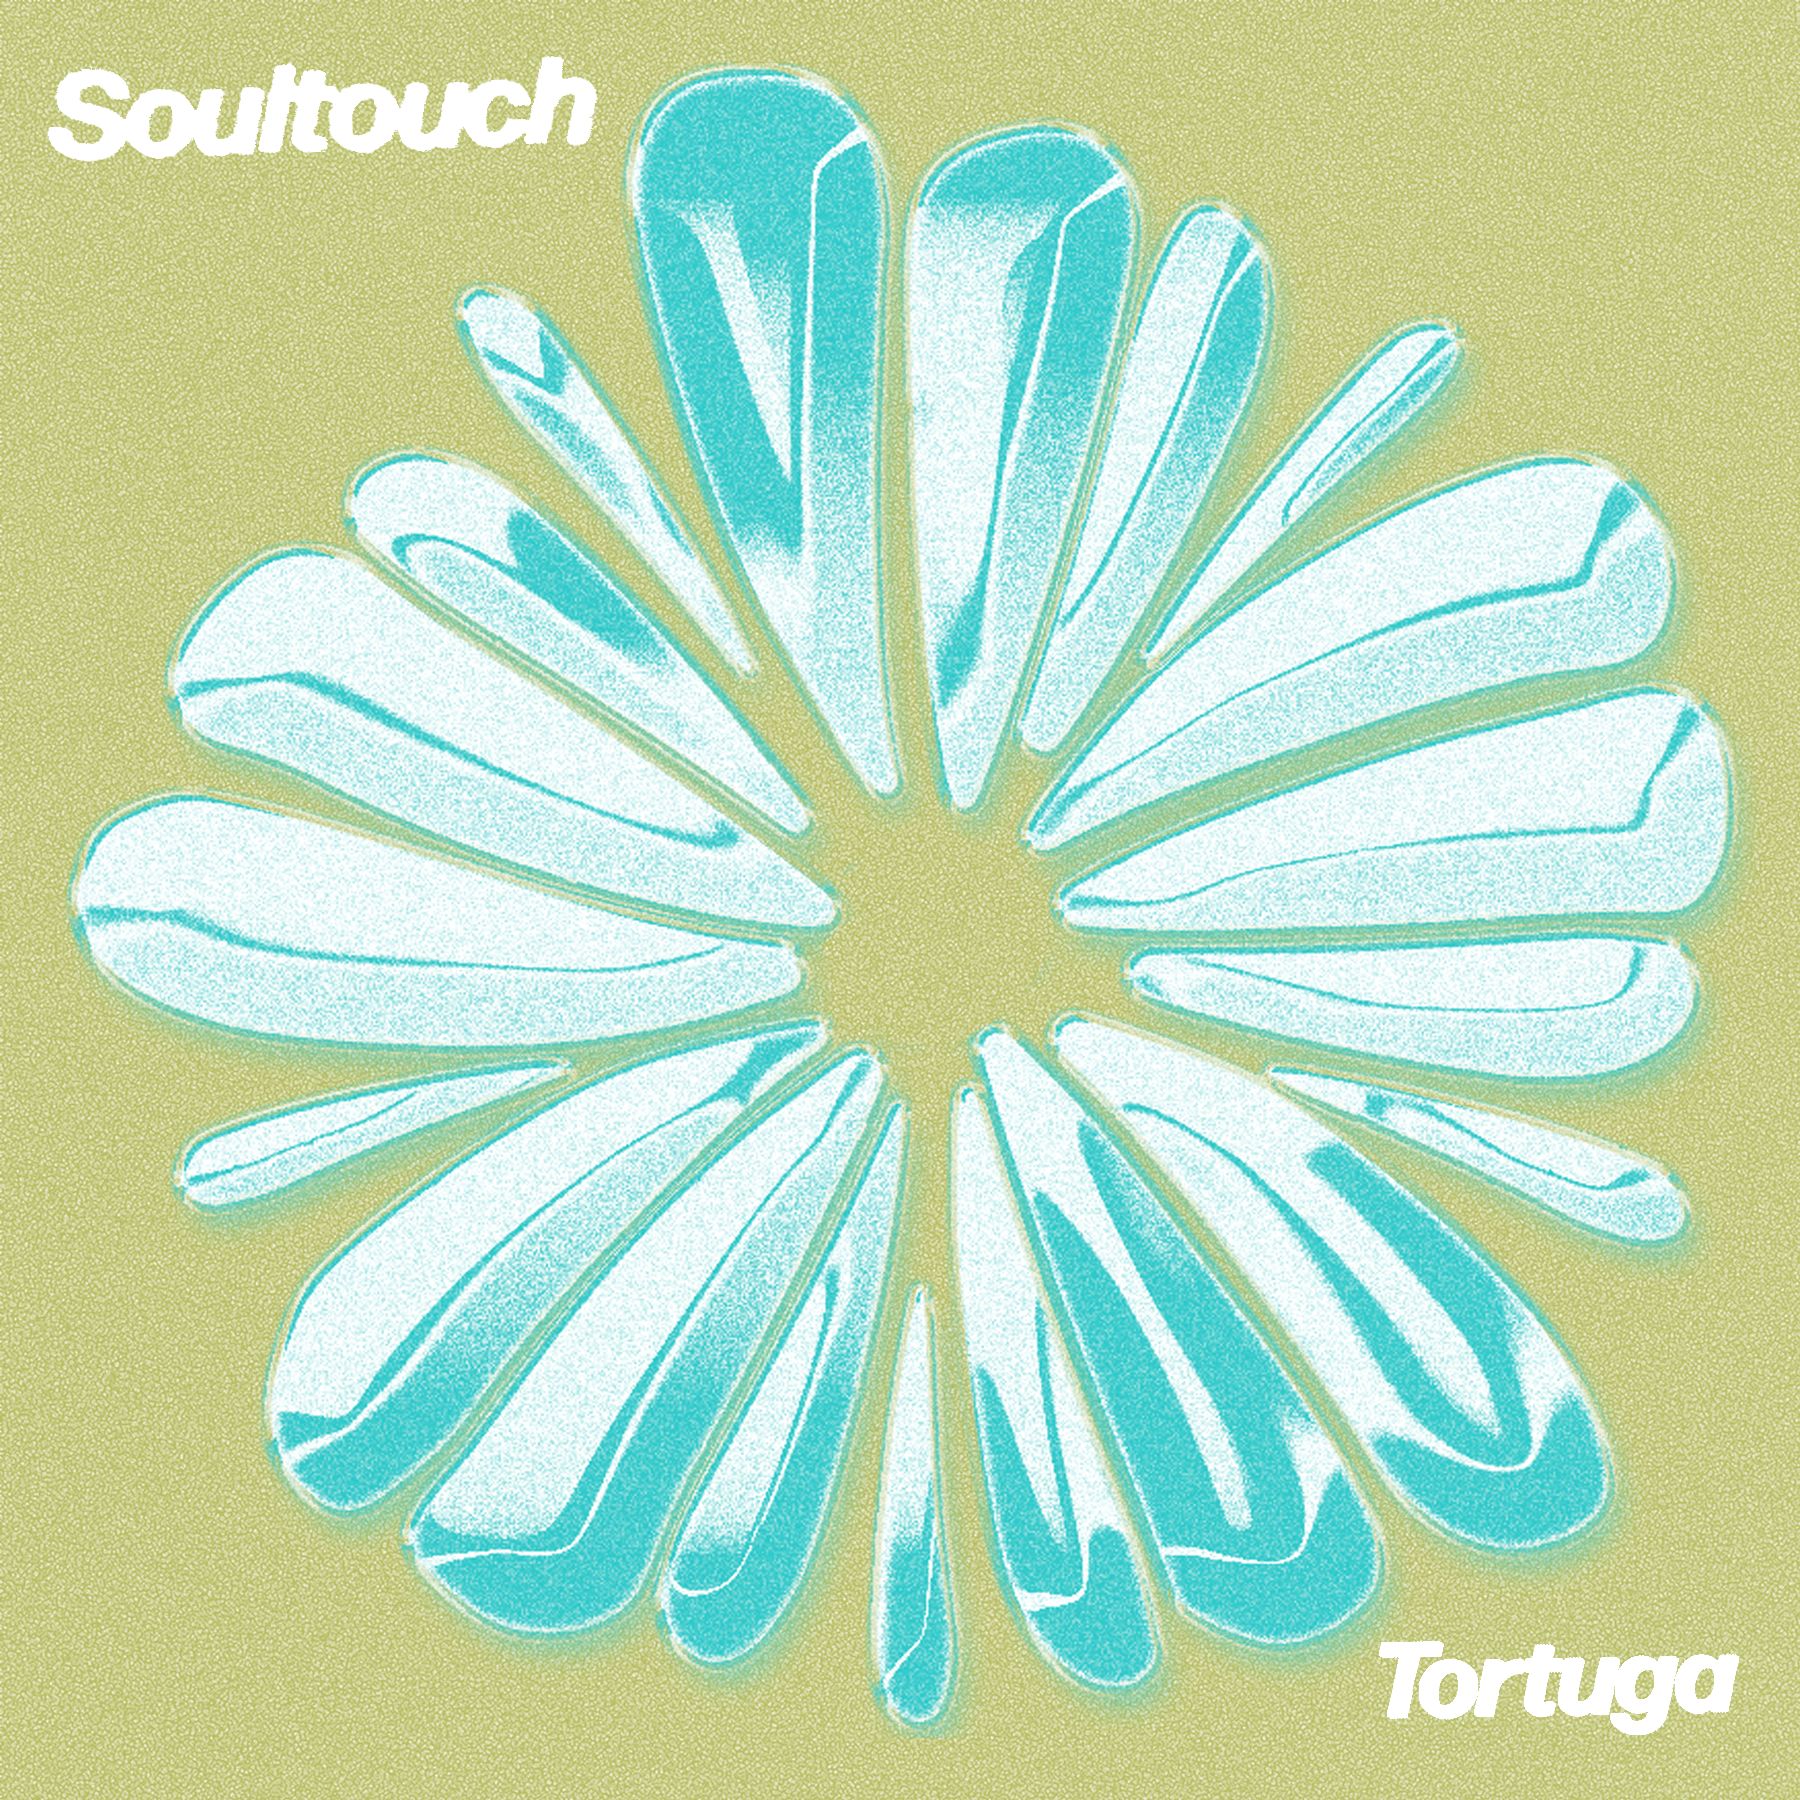 ダウンロード PREMIERE : Tortuga - Soultouch